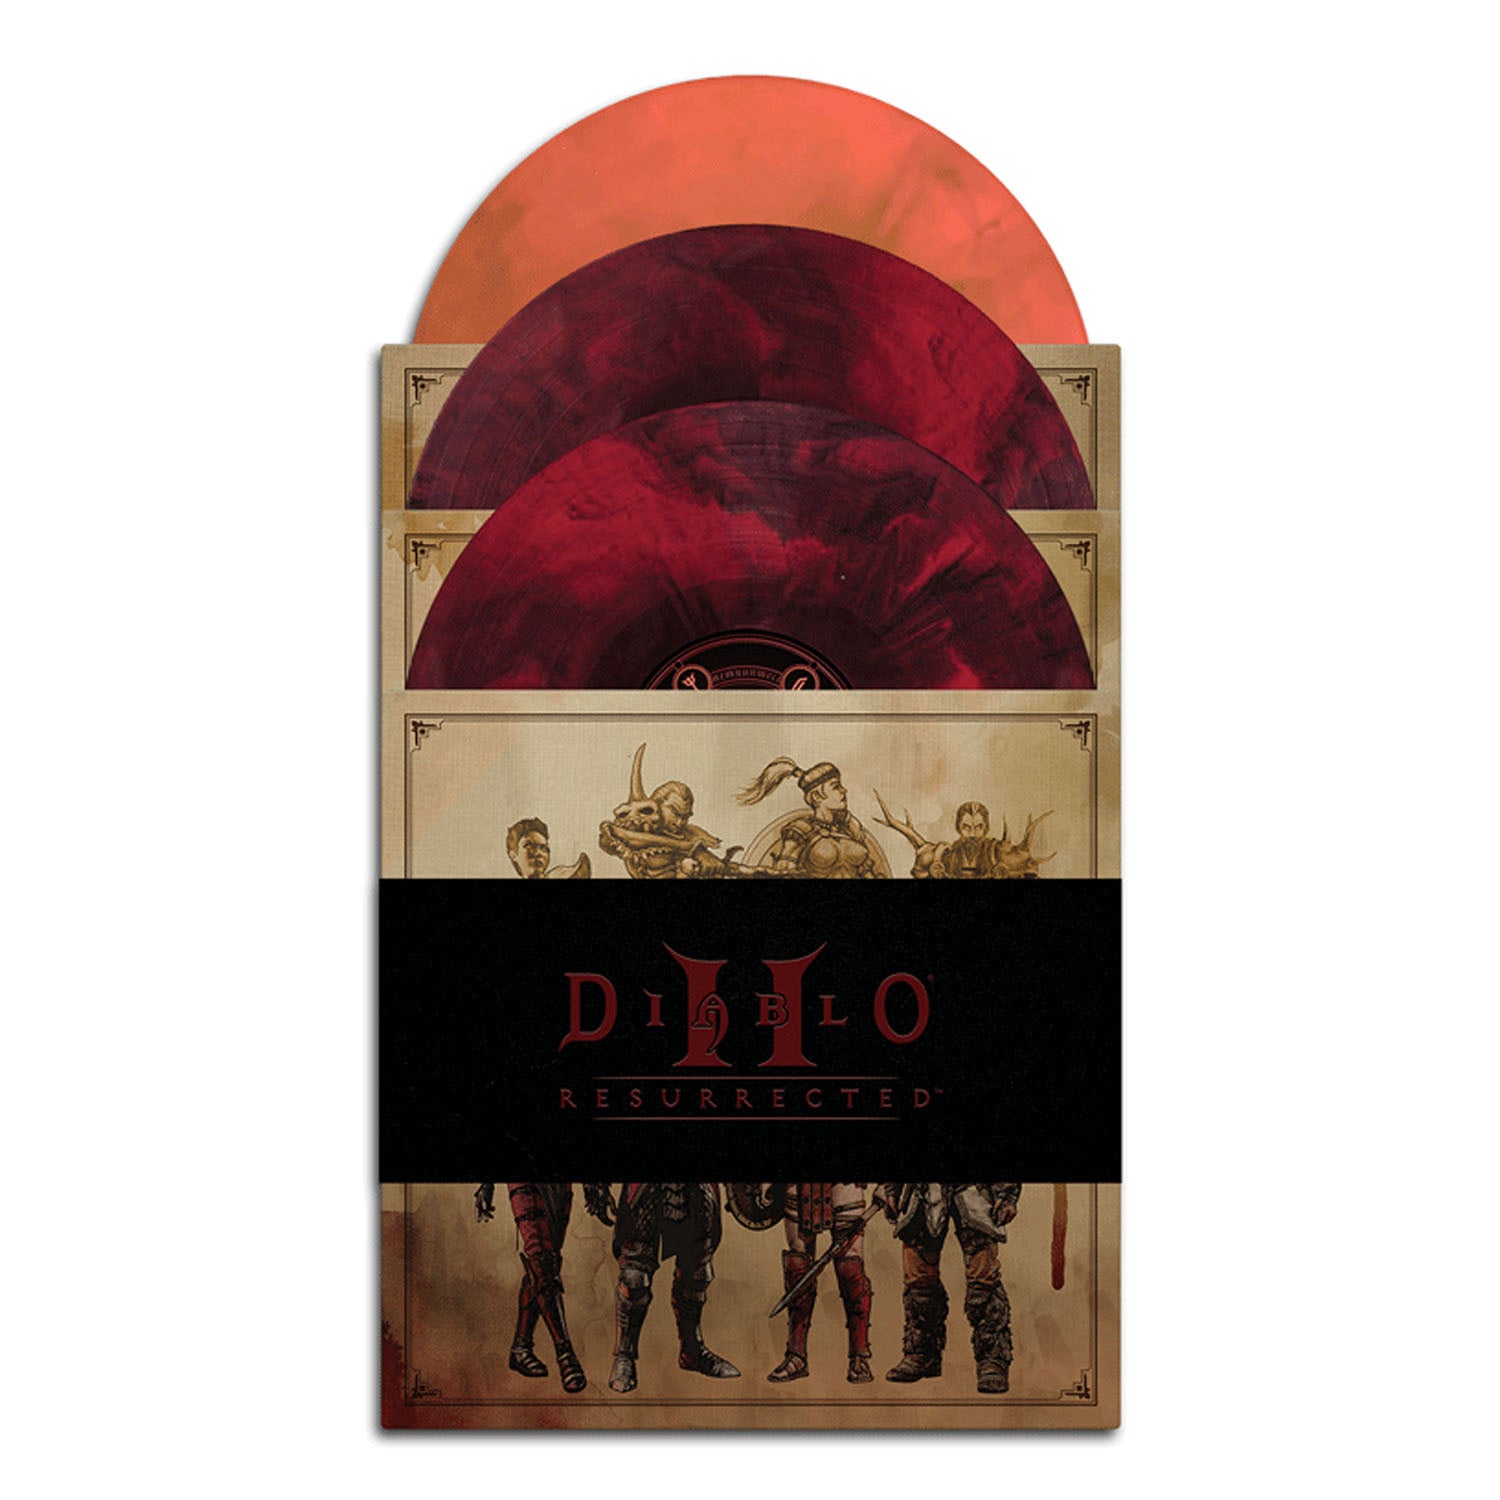 Diablo II: Resurrected 3xLP Deluxe Box Set - Front View of Record Set